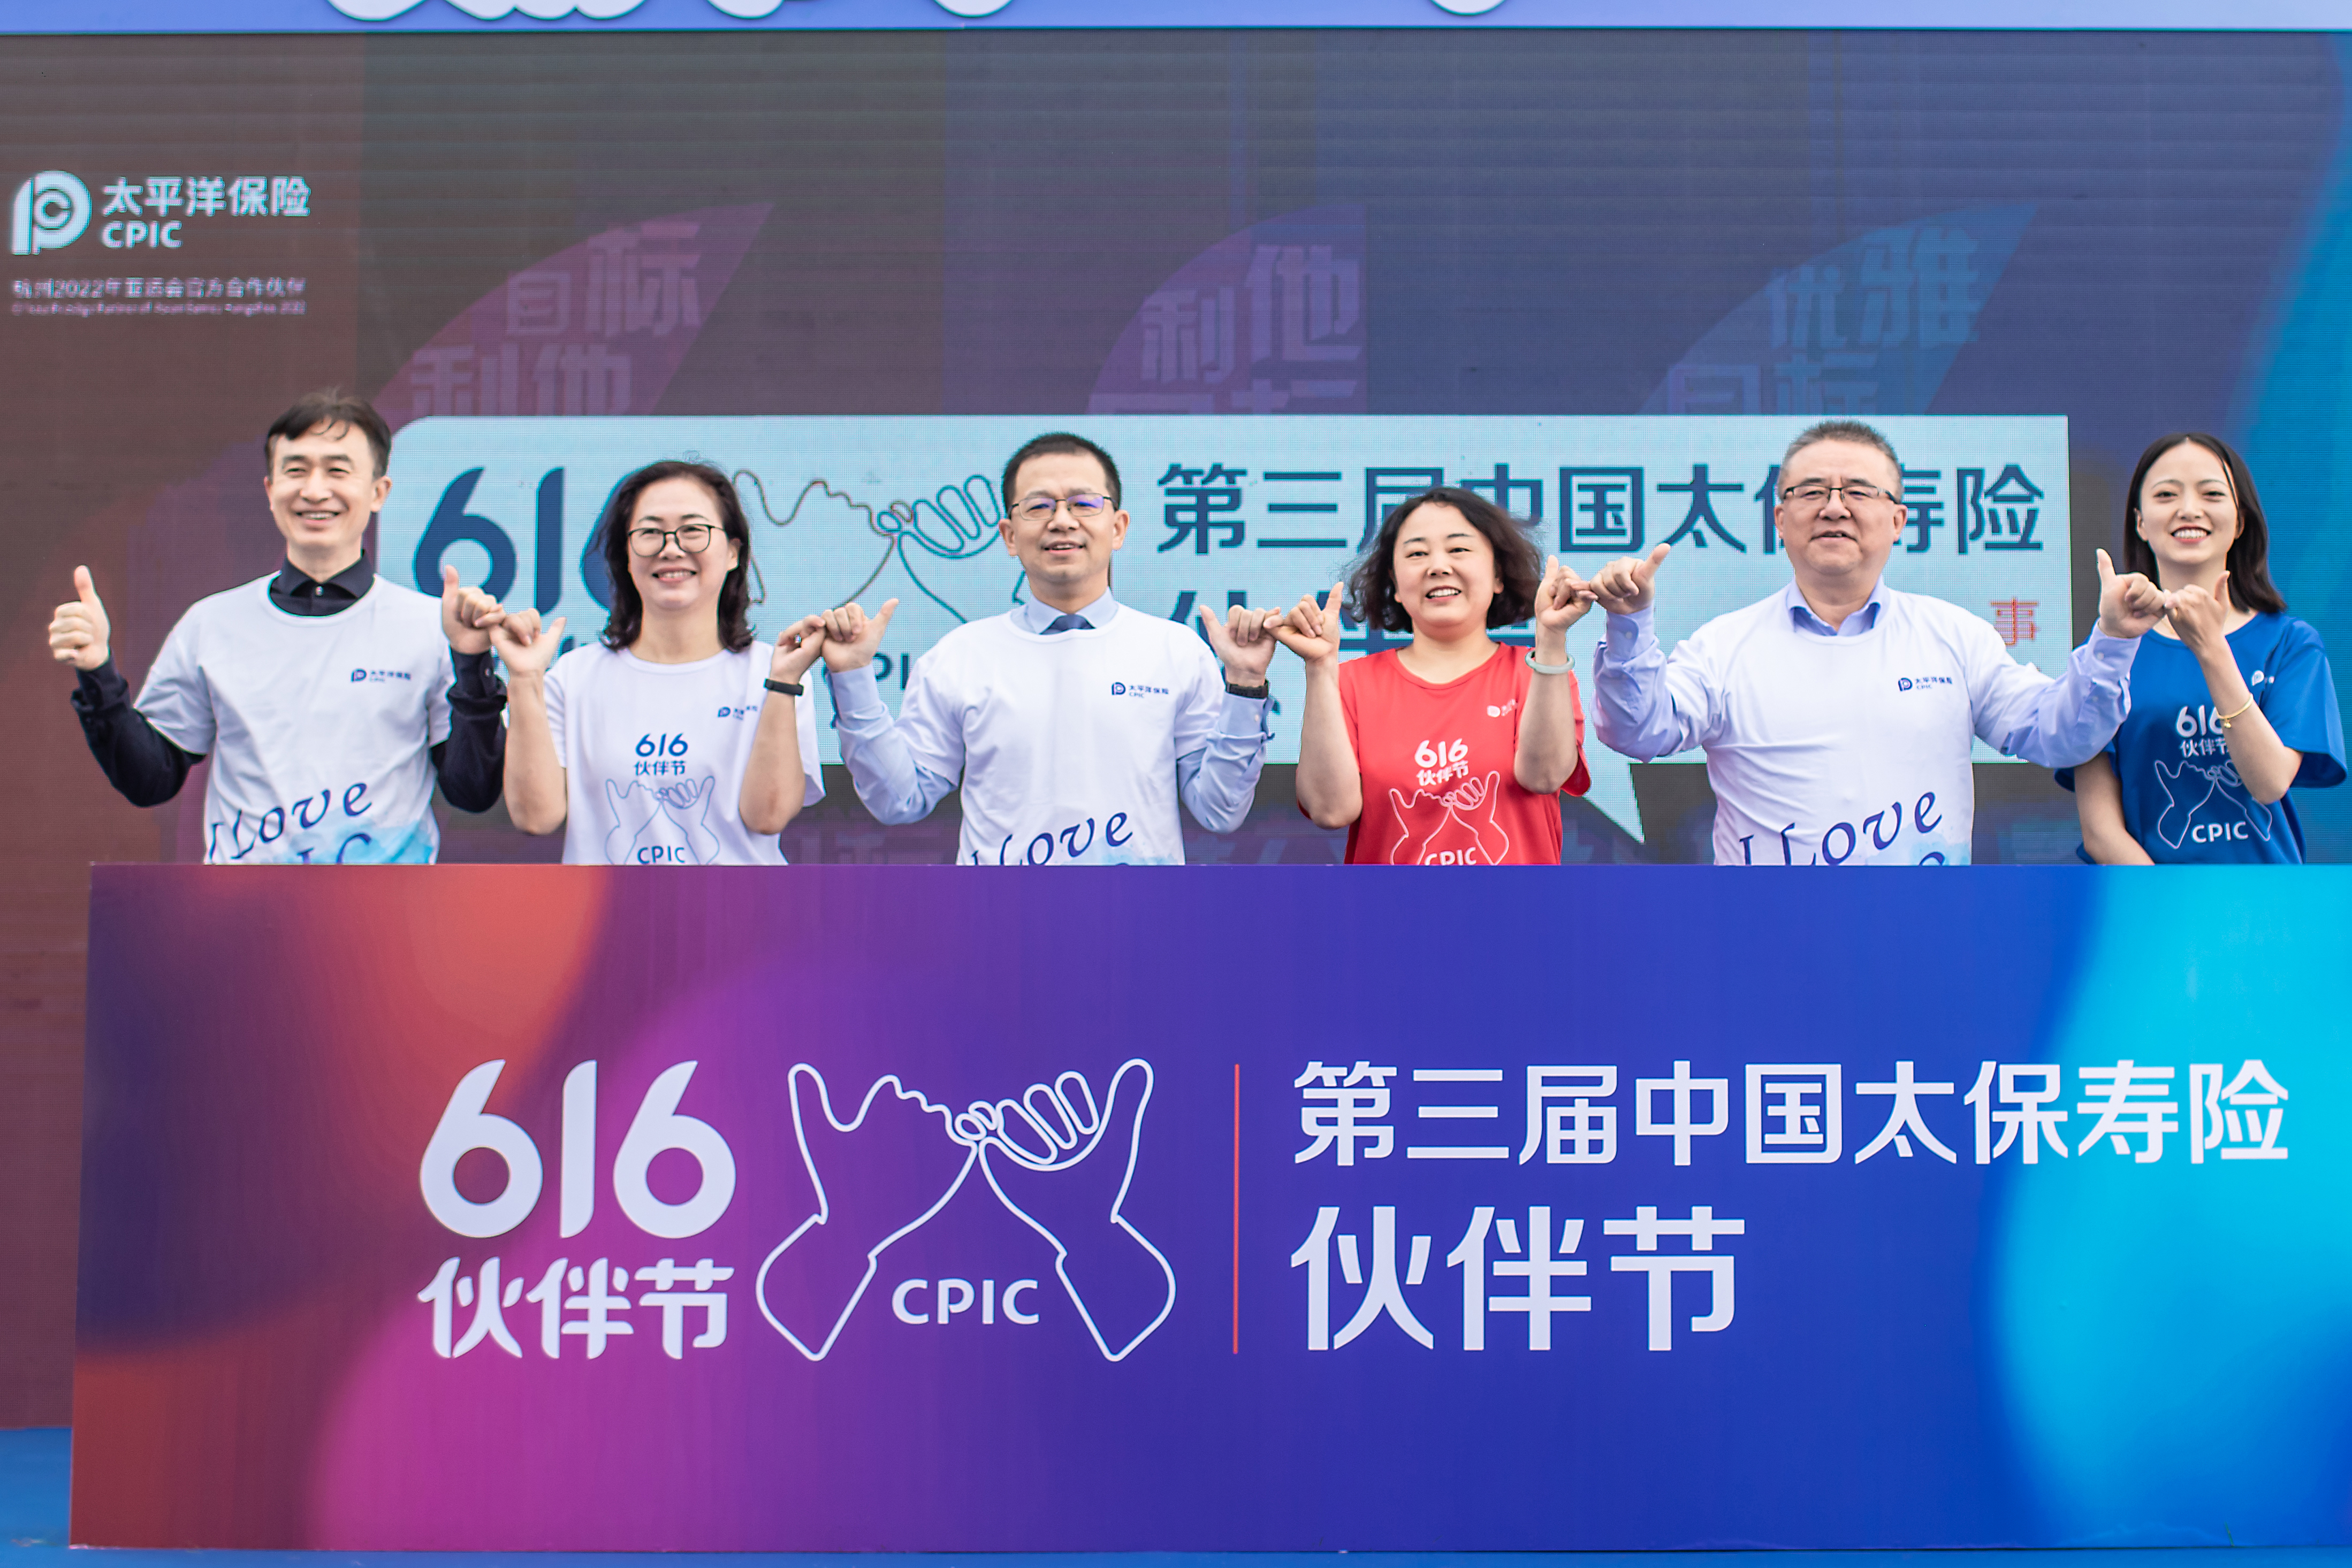 中国太保寿险举办第三届"616伙伴节"